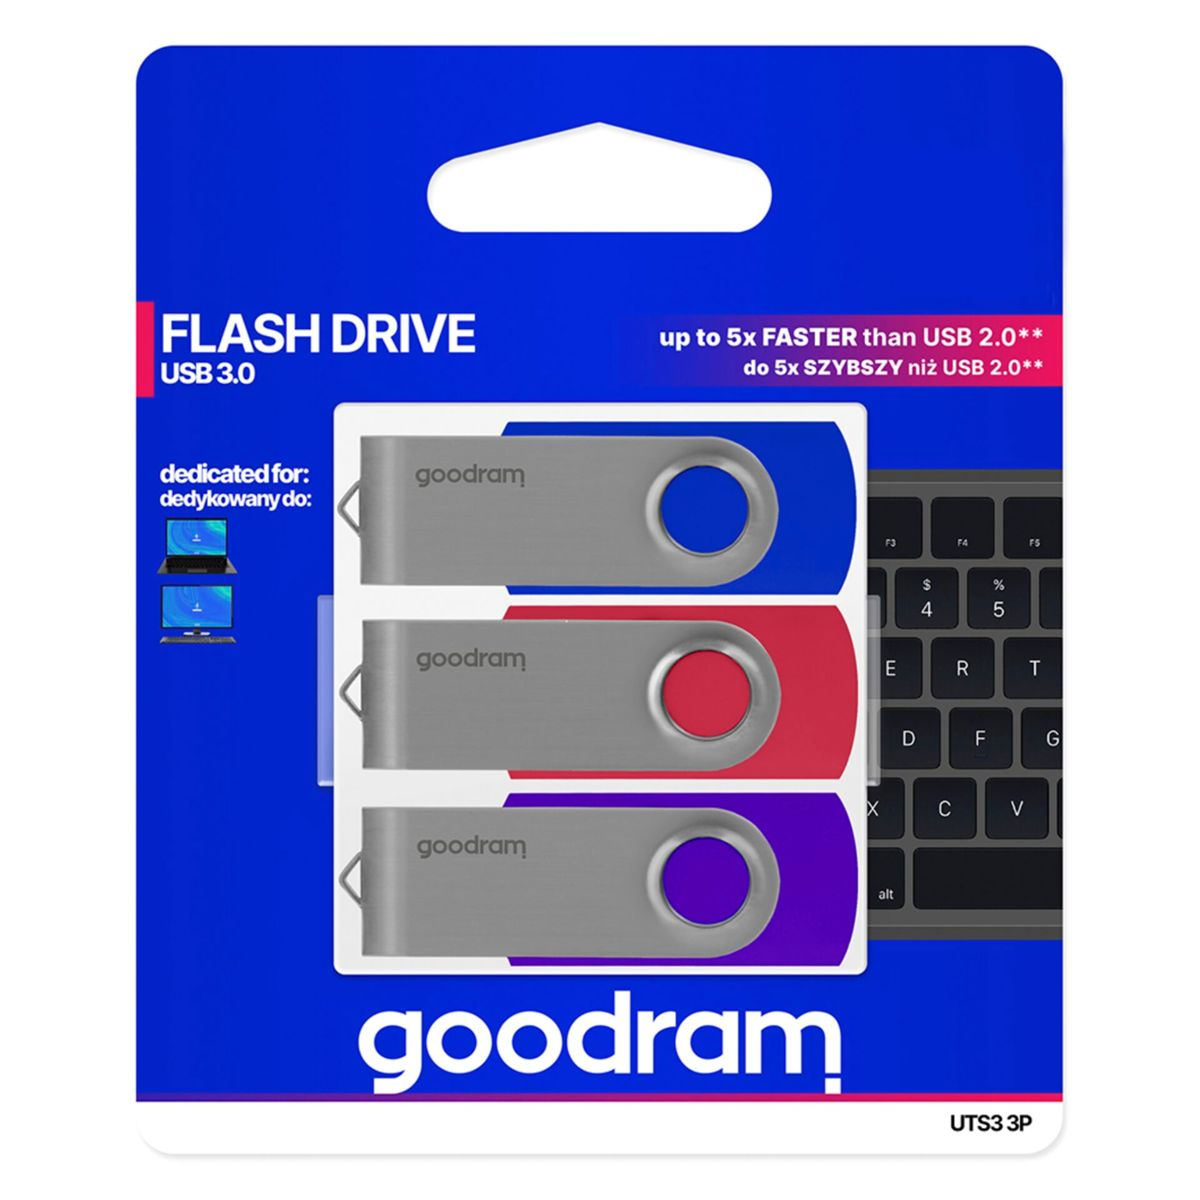 GOODRAM UTS3 USB 3.0 64GB 3-pack Stick GB) 64 (multicolor, mix USB